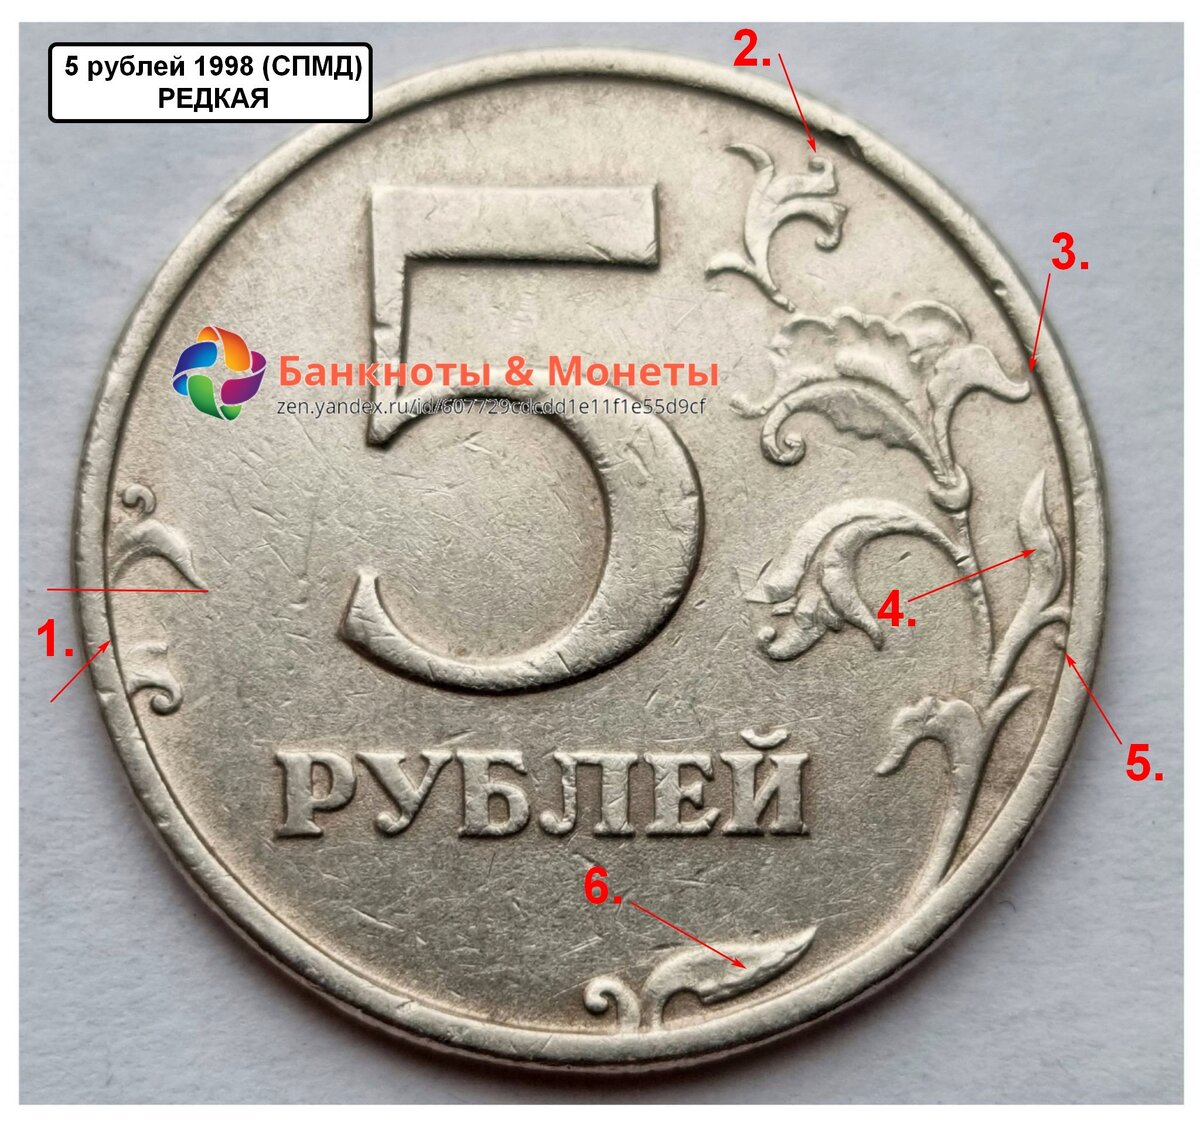 Стоимость пятерки. 5 Рублей 1998 СПМД. Редкая Монетка пять рублей 1998 года. Пять рублей СПМД 1998. Монета 5 рублей 1998 СПМД.